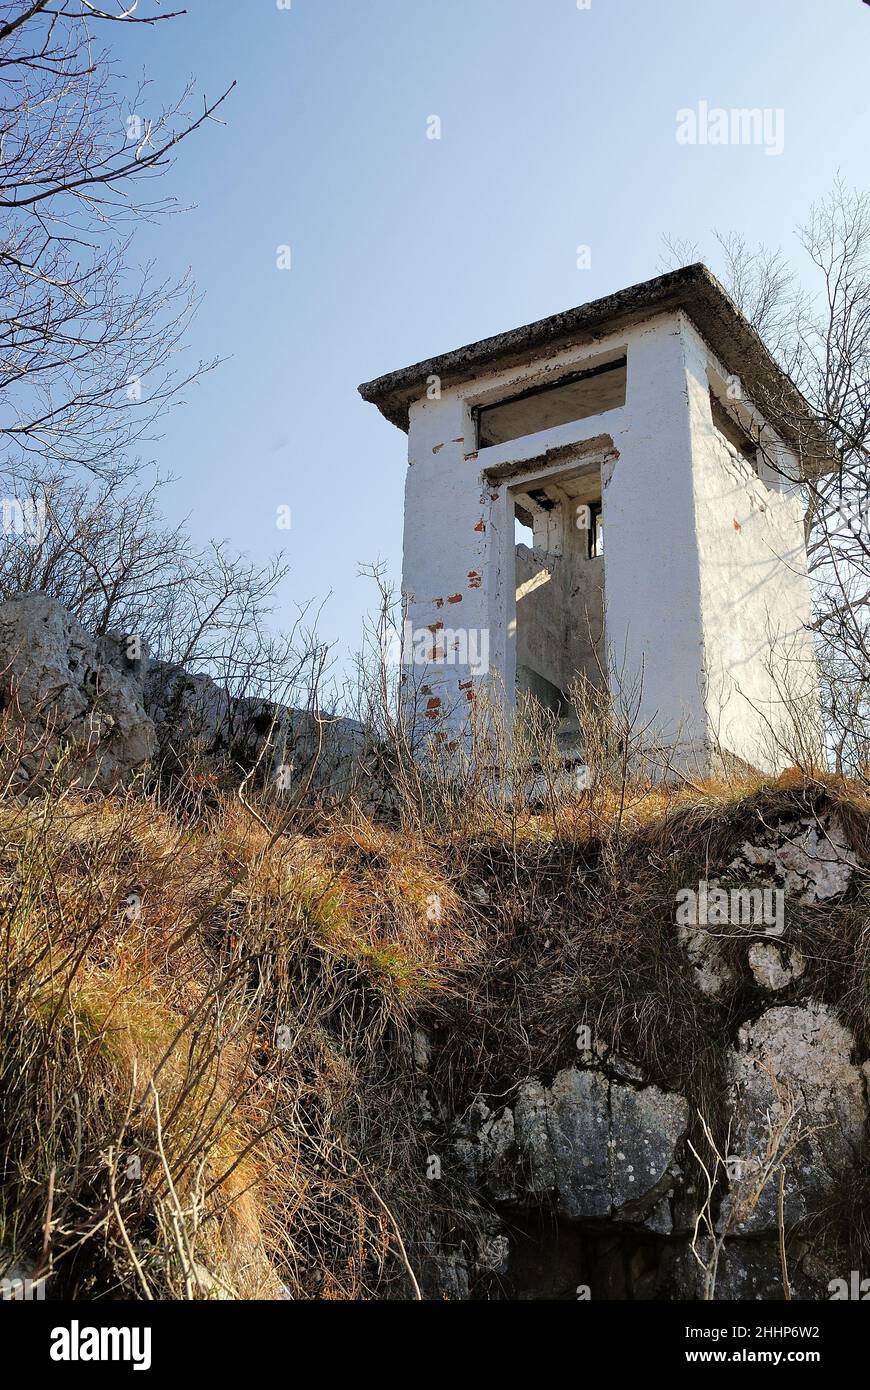 Der unzugängliche Kamm des Monte Sabotino (Sabotin) blickt über das enge Tal des Flusses Isonzo (Soca). Der Wachkasten markiert die Grenze zwischen Italien und Slowenien und erinnert uns daran, dass in den Jahren des Kalten Krieges der Eiserne Vorhang auf dieser Linie verlief. Stockfoto